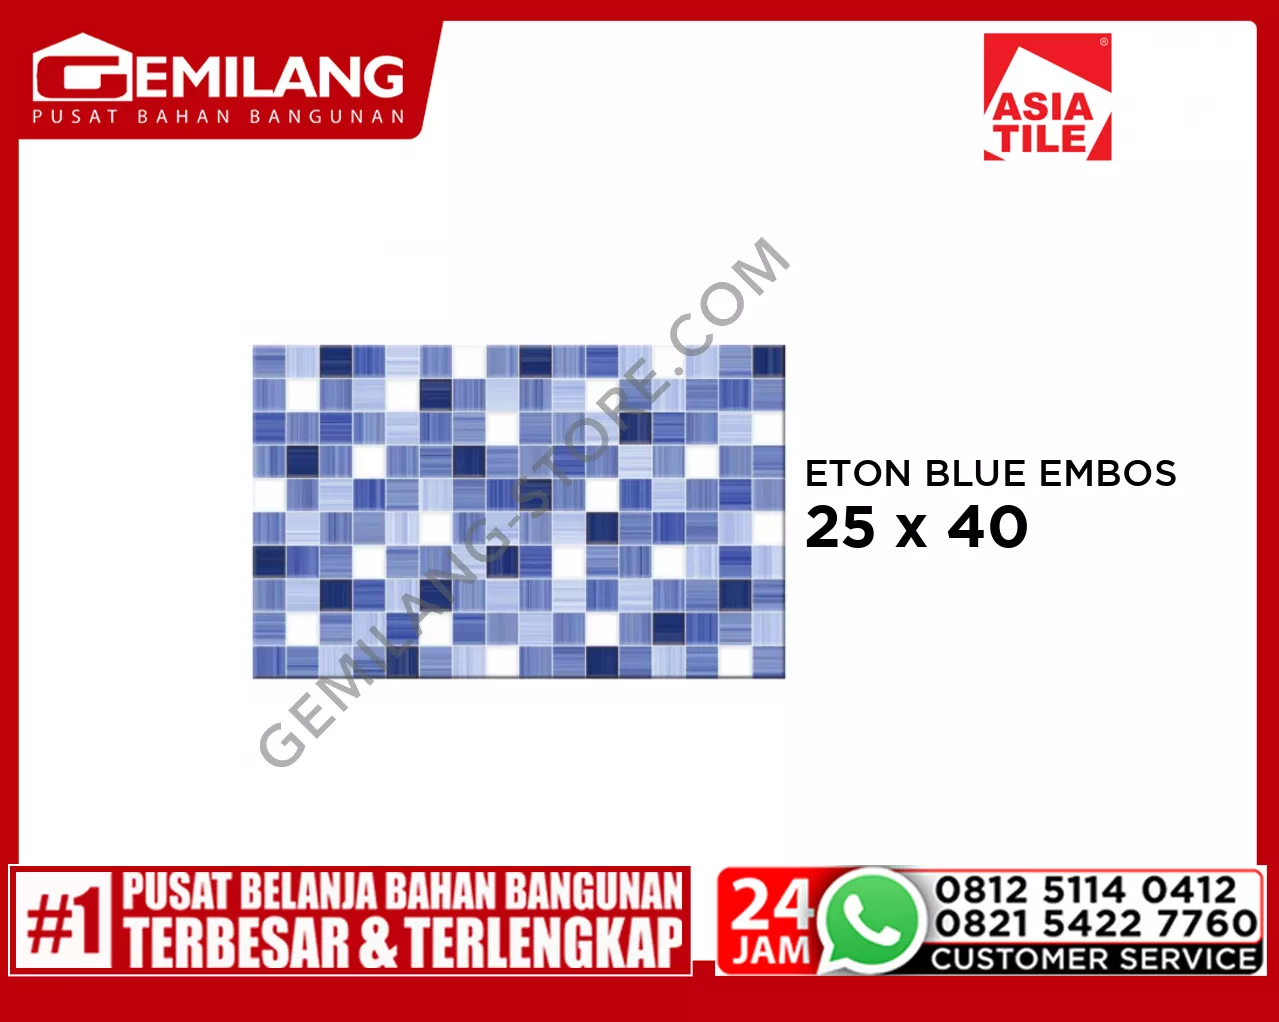 ASIA ETON BLUE EMBOSS 25 x 40